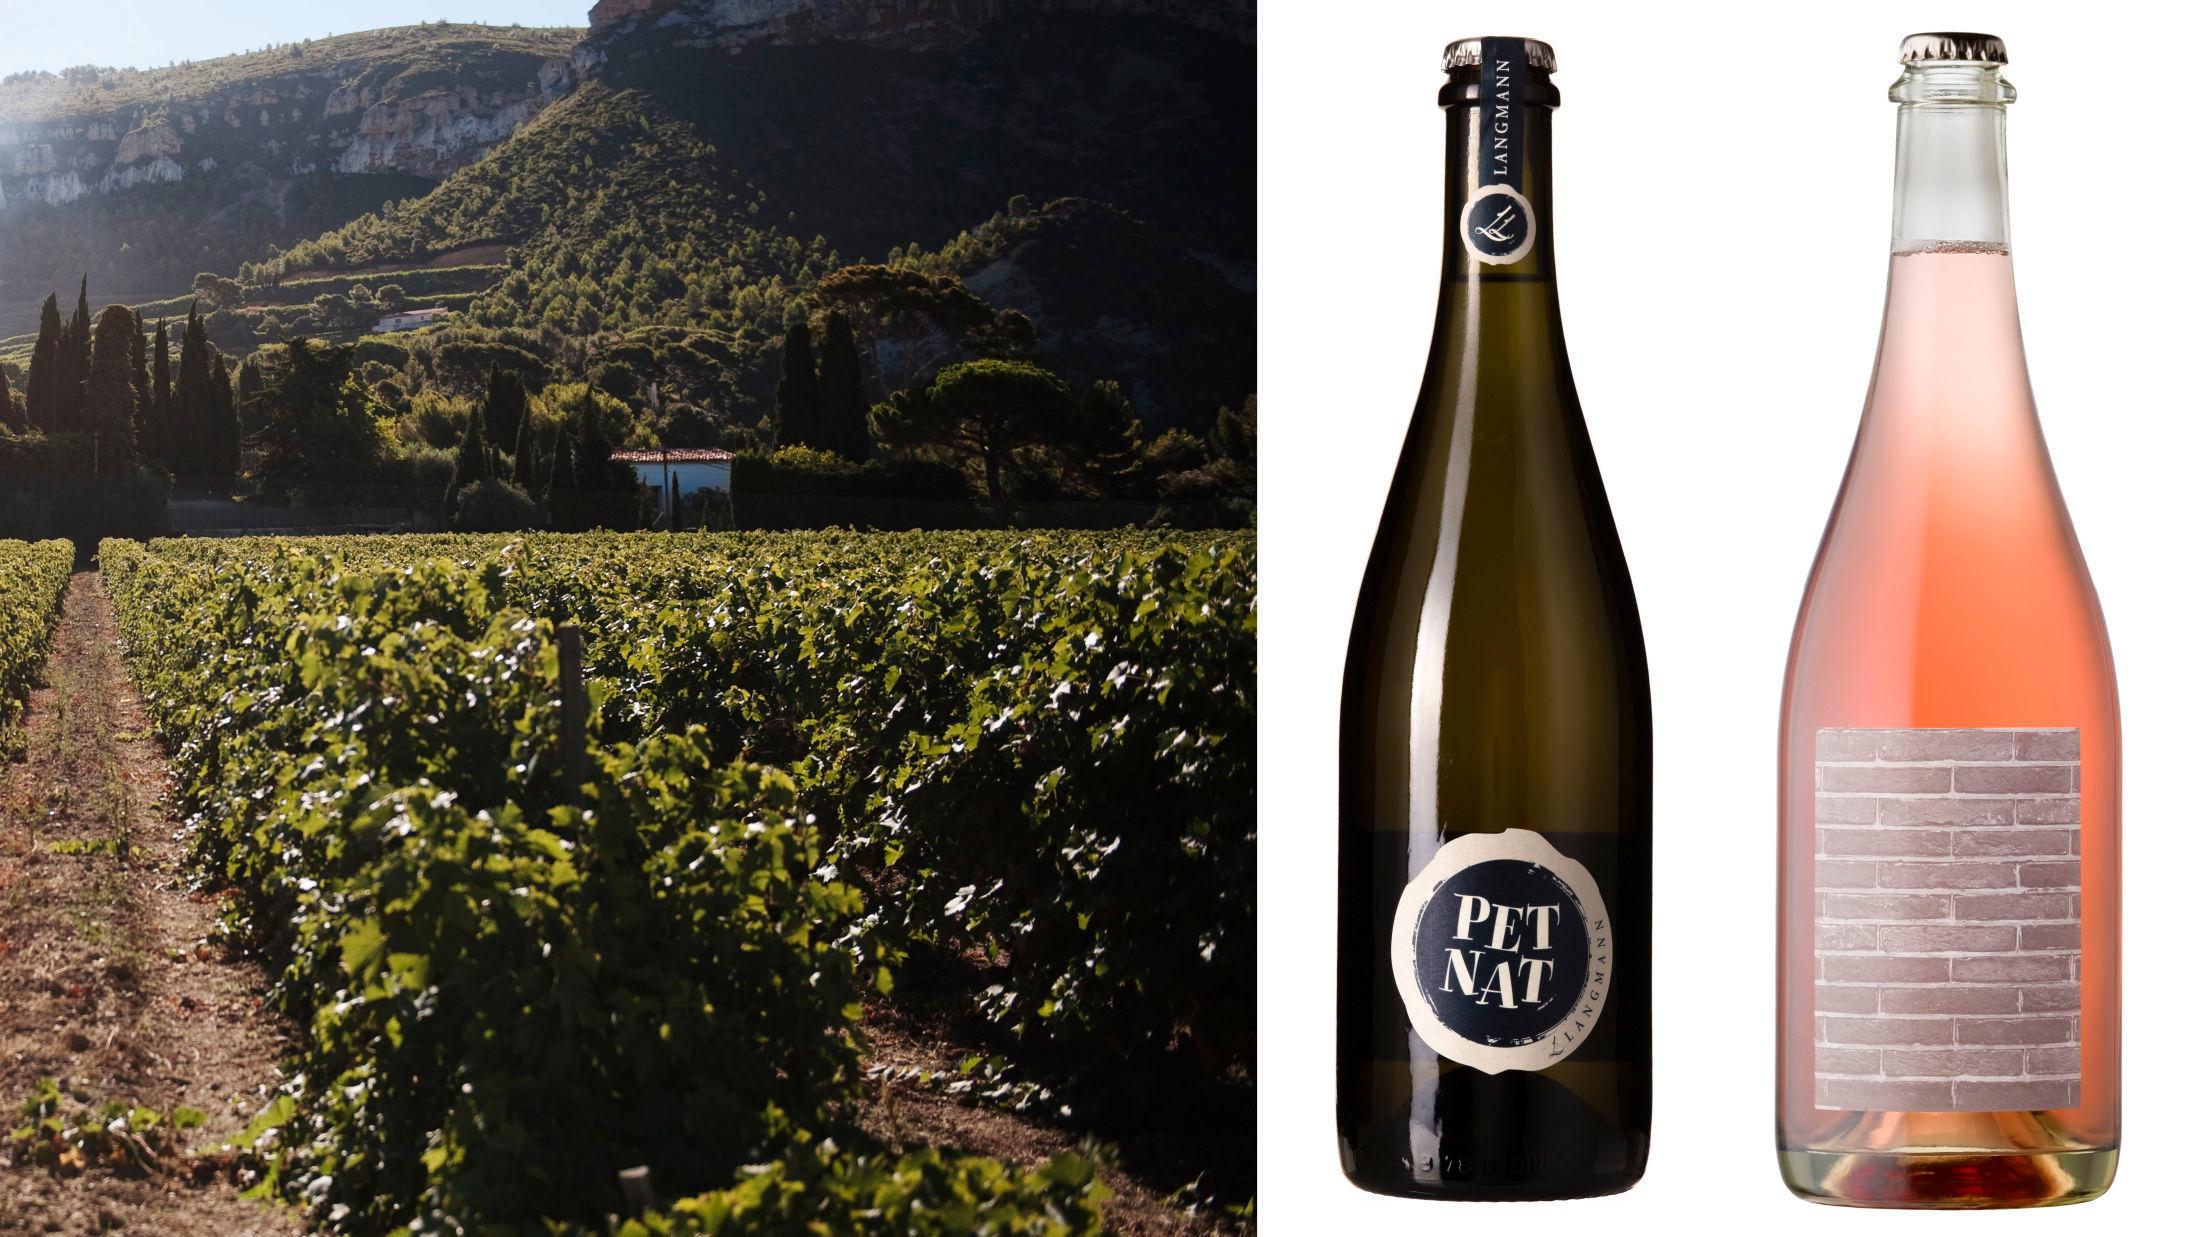 HIPT: Pétillant naturel er også kjent som PetNat. Vinmonopolet har sluppet ti nyheter av denne perlende vinen denne sommeren. Foto: Therese Alice Sanne/VG/Produsentene